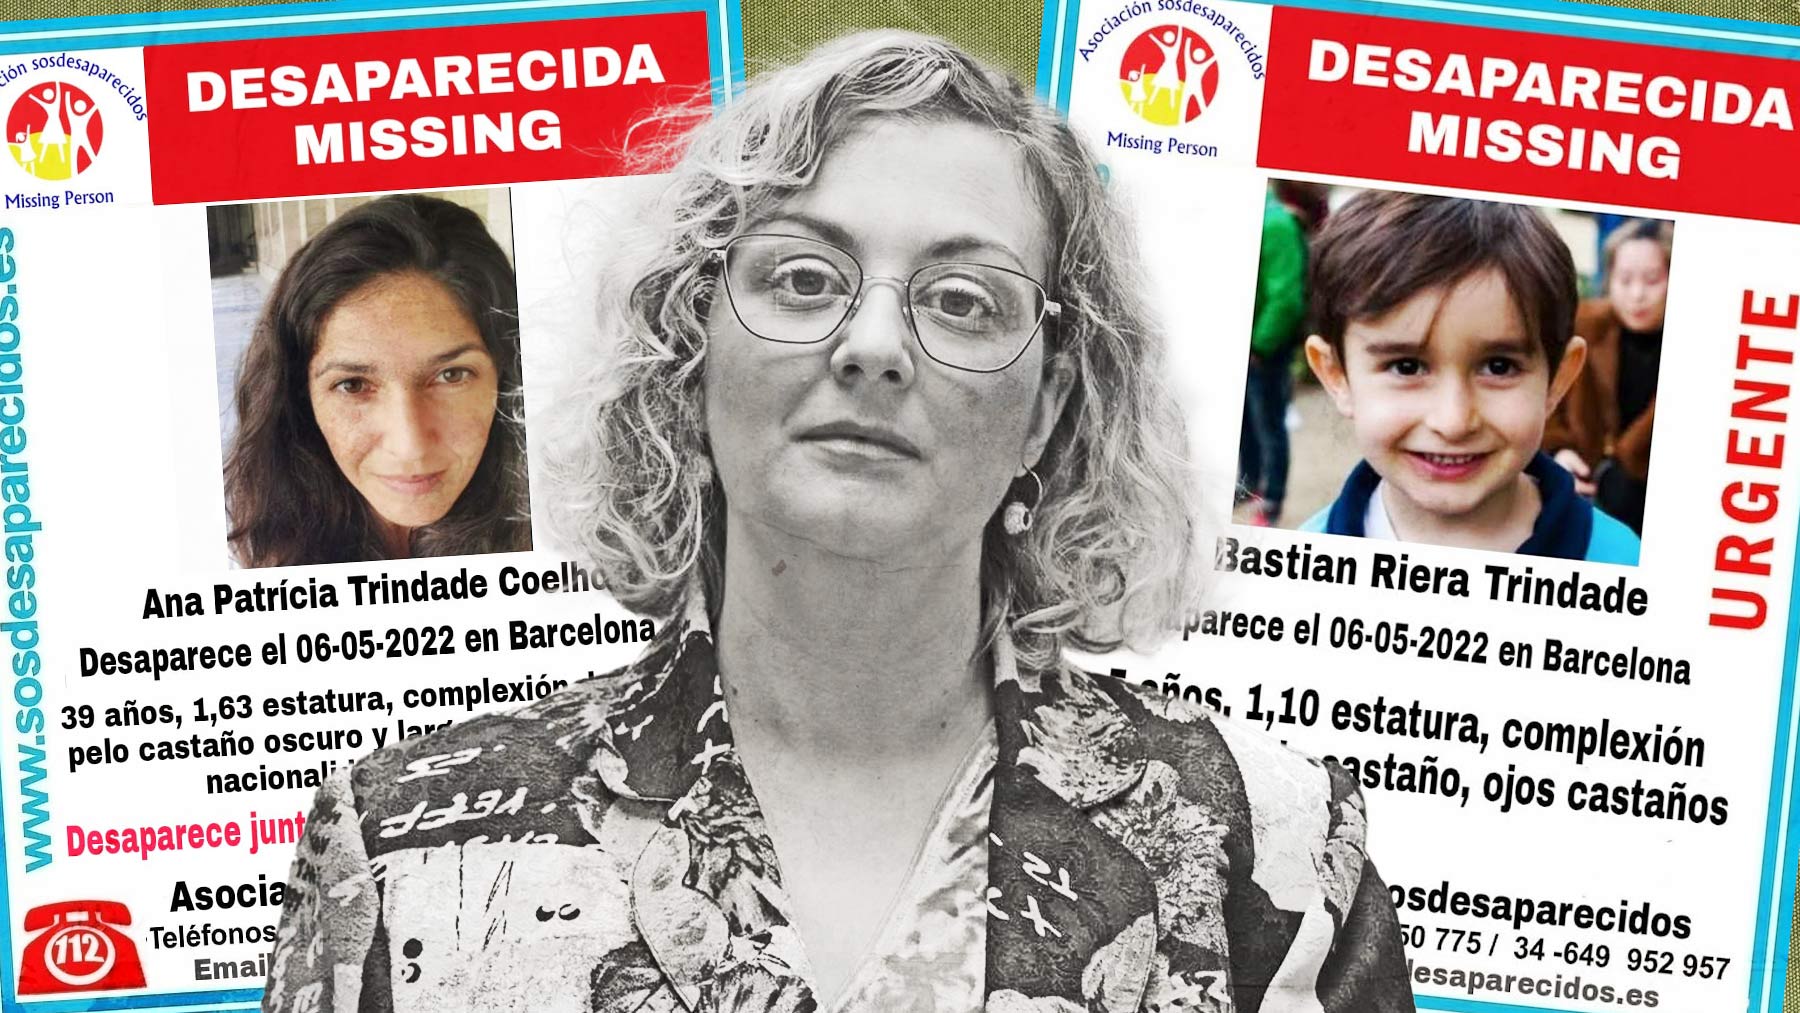 Ana Patricia, María Sevilla y Bastián, el niño desaparecido.